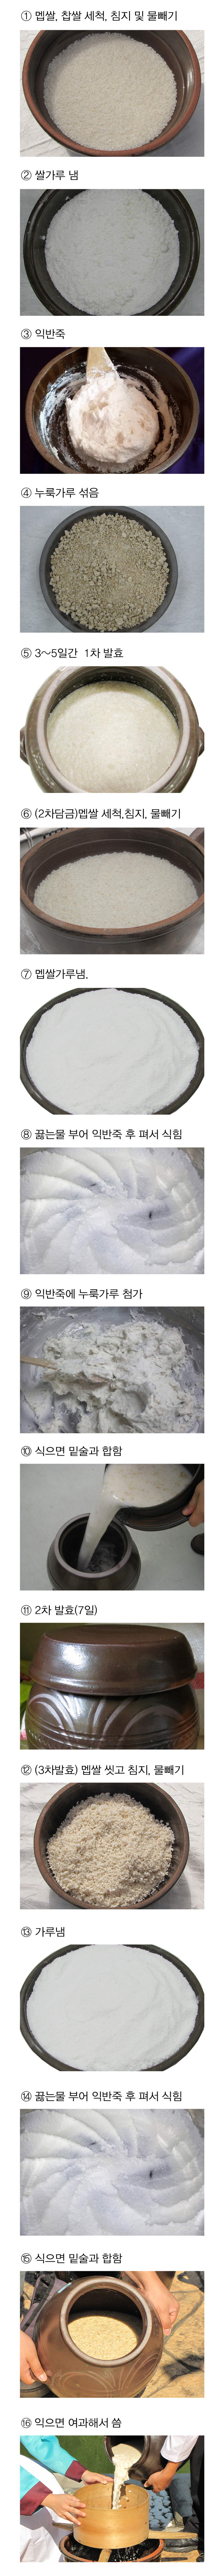 아황주 > 수운잡방(의역) 전통주 담그는법